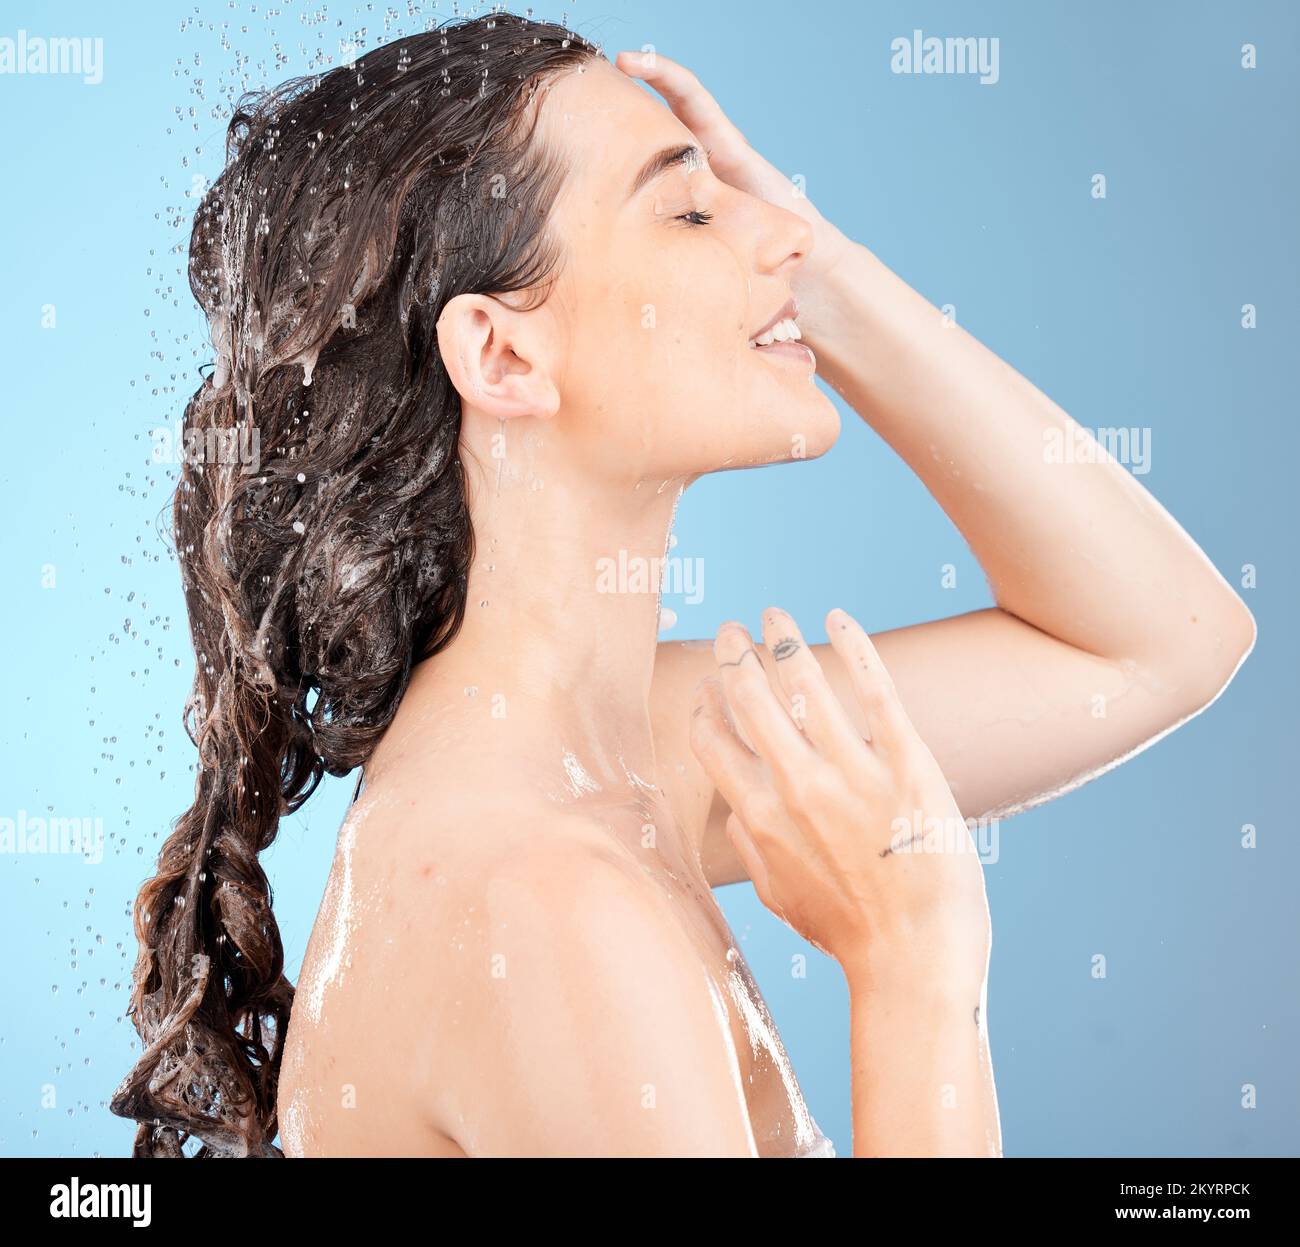 Dusche, Wasser und Frau reinigt Körper und Haare für Haut Wellness, Gesundheit und Waschen. Wasserspritzer, Kosmetik- und Schönheitspflege eines Models, der Hautpflege macht und Stockfoto